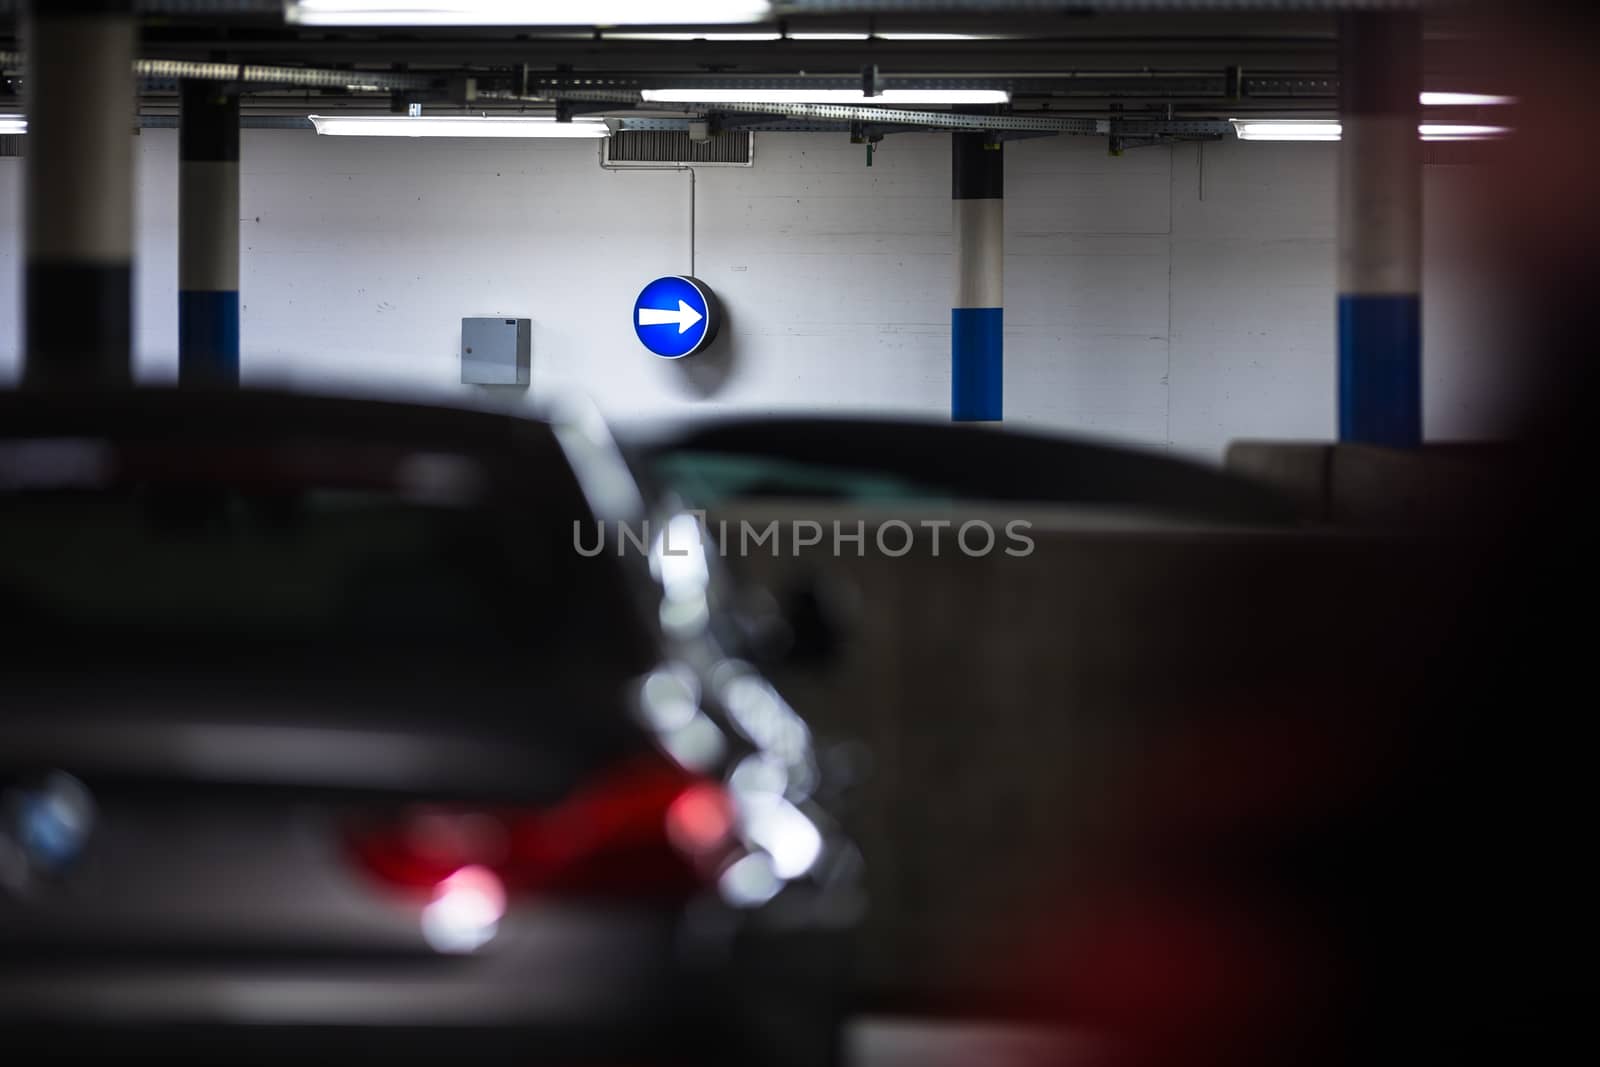 Underground parking/garage by viktor_cap